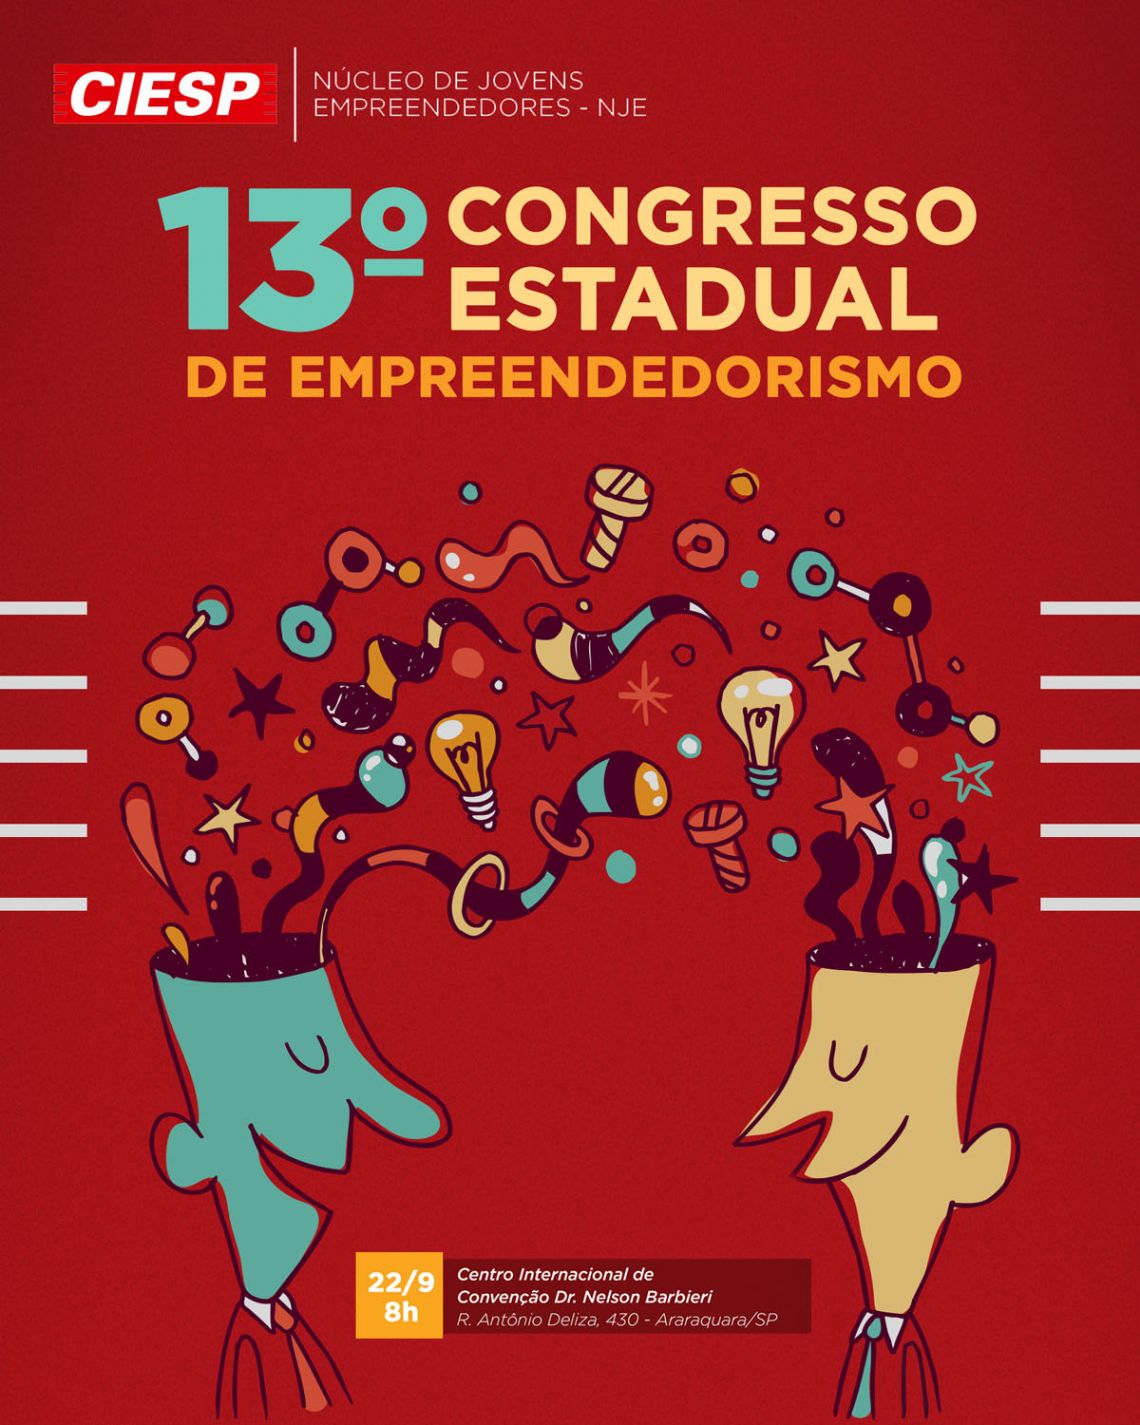 13 Congresso Estadual de Empreendedorismo Nje-ciesp -  Nje Ciesp